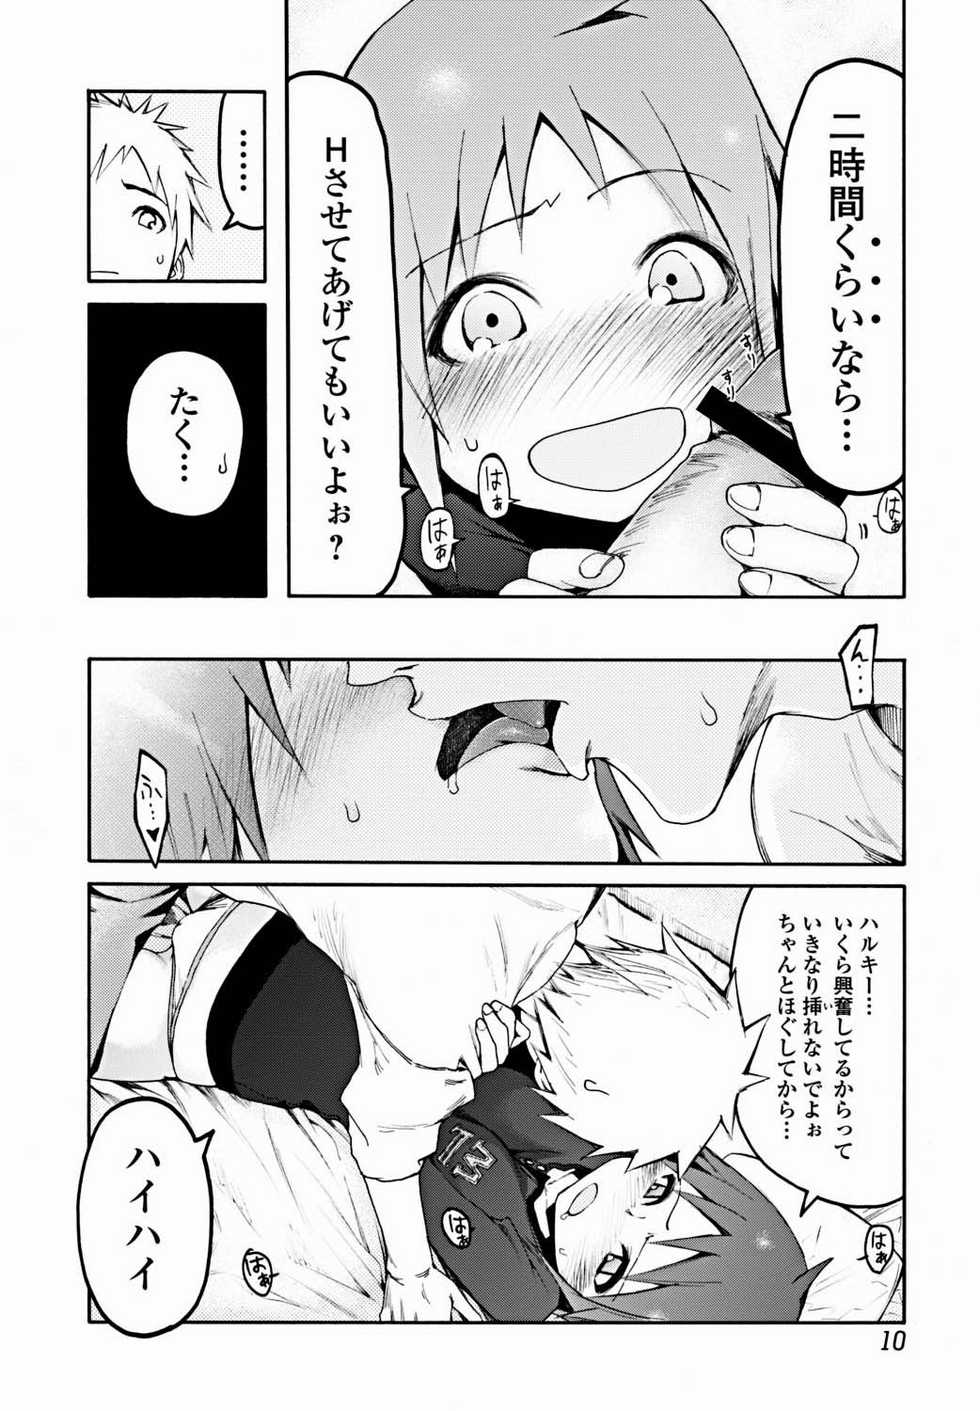 Bishoujo Kakumei KIWAME 2012-02 Vol. 18 [Digital] - Page 11